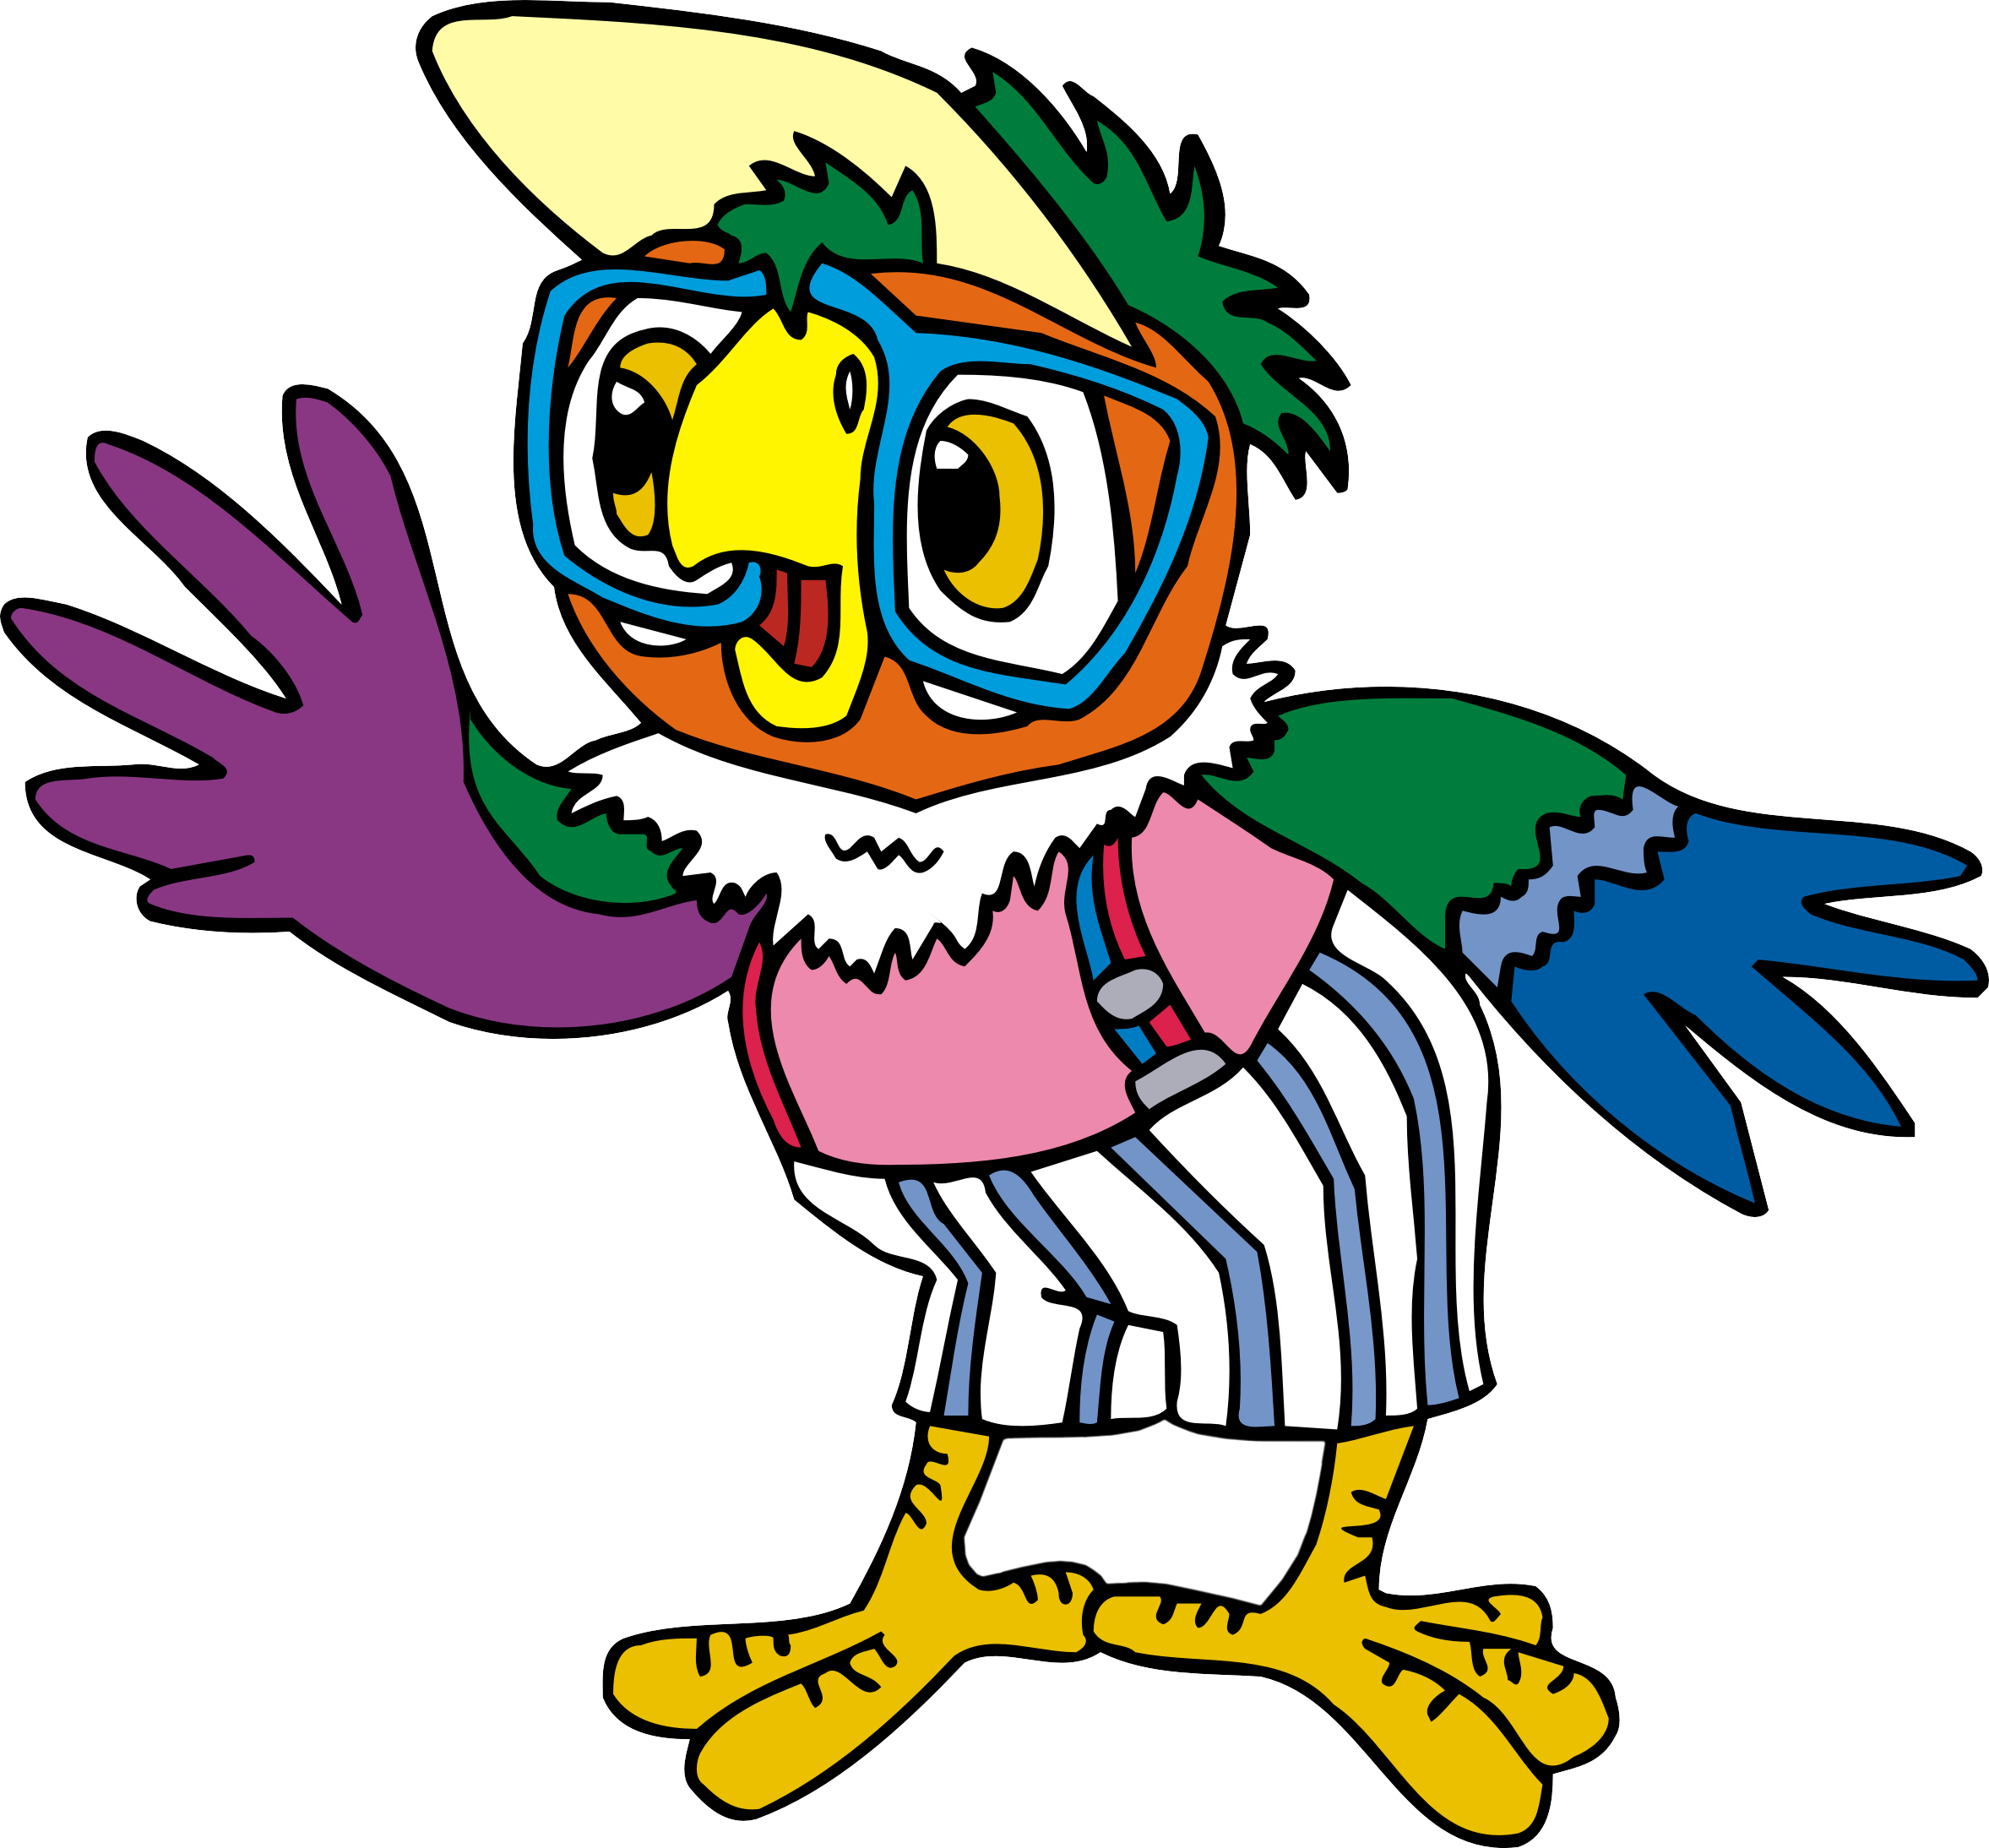 Как нарисовать попугая карандашом поэтапно: учимся рисовать попугая кешу из мультфильма (инструкция для начинающих)